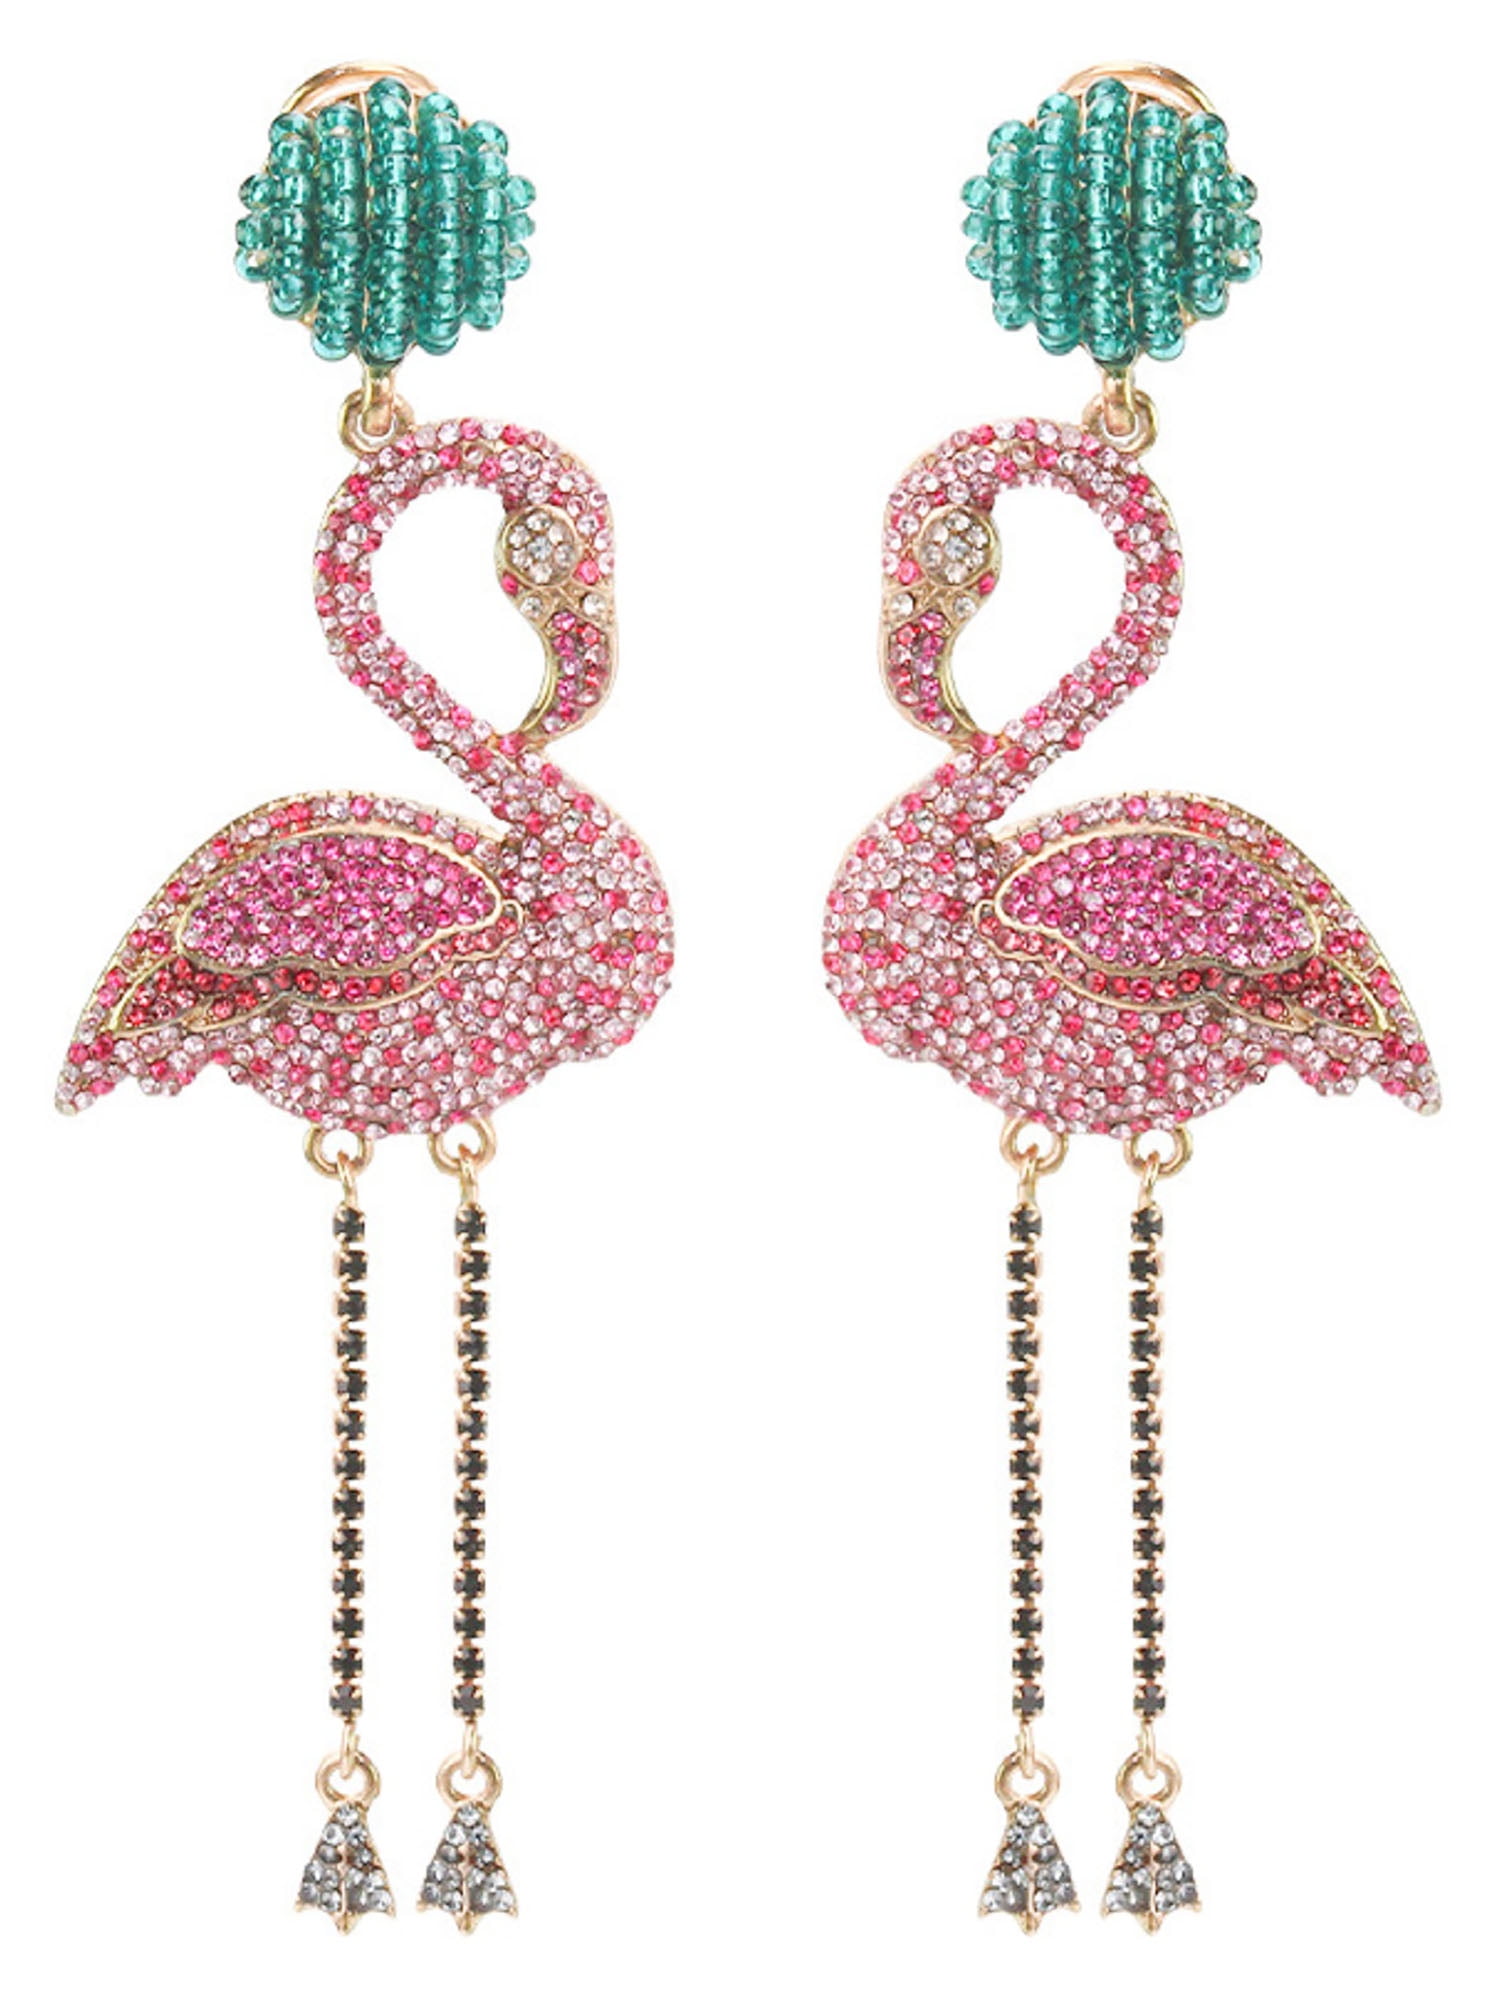 925 Silver Hooks Flamingo Earrings Quirky Trendy Earrings, Minimalist Bird Dangle Earrings Fun Earrings